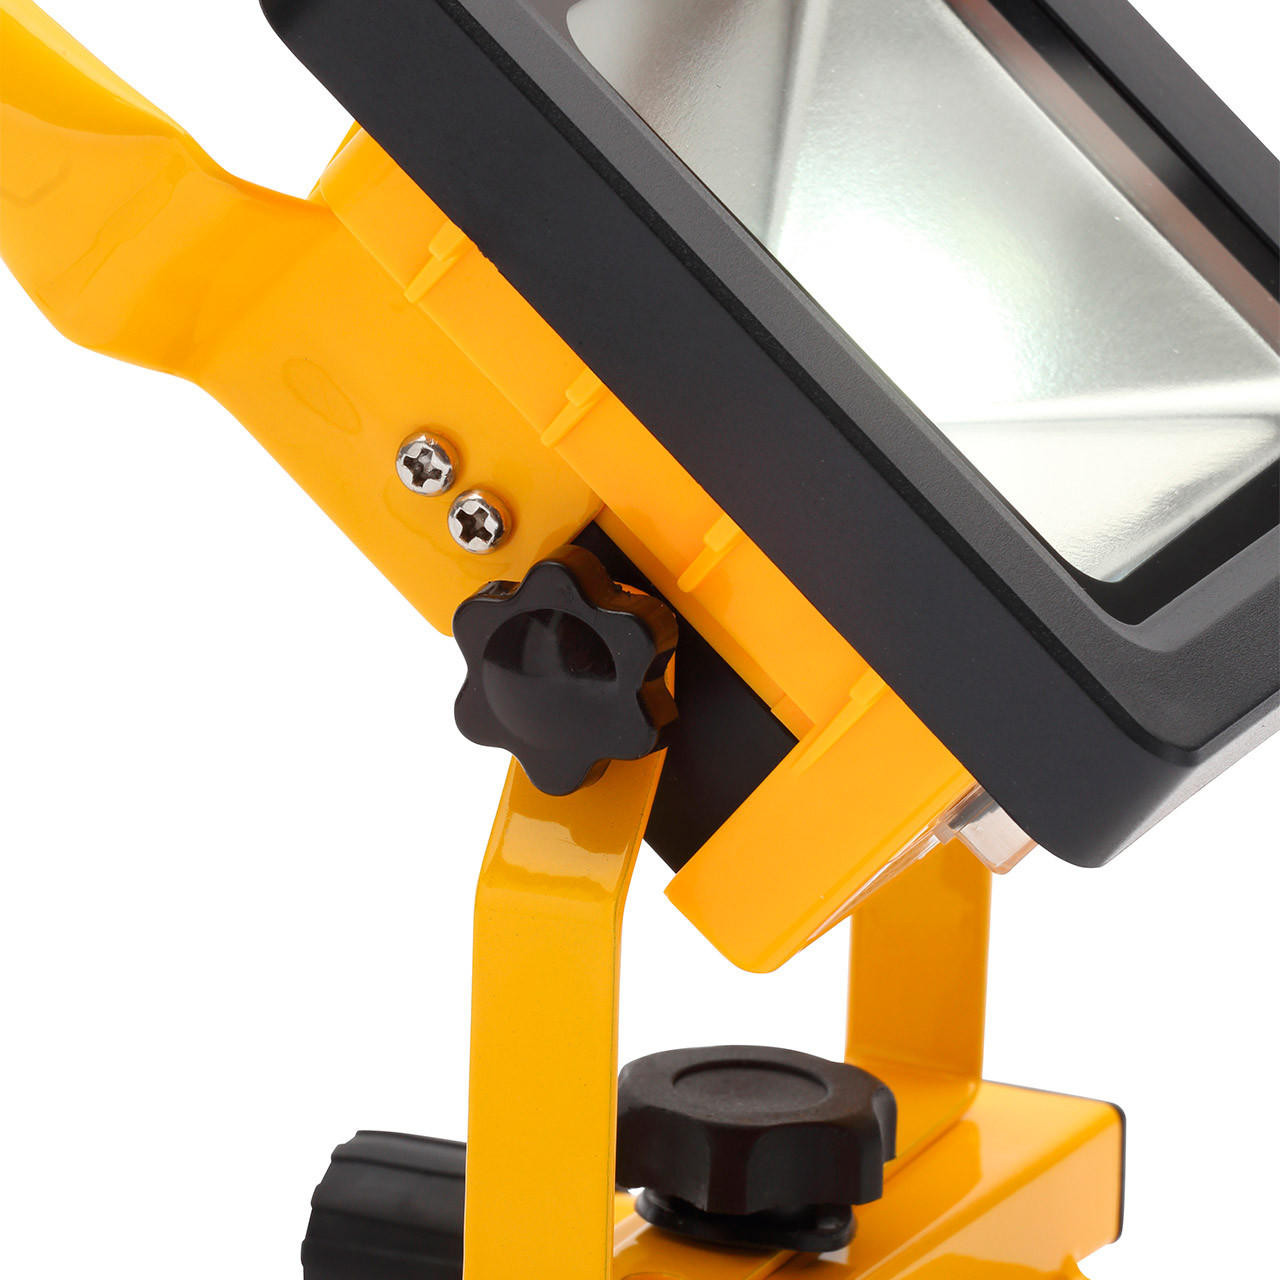 Elmark Work - lampe de travail rechargeable - 10W LED incl. - IP44 - jaune